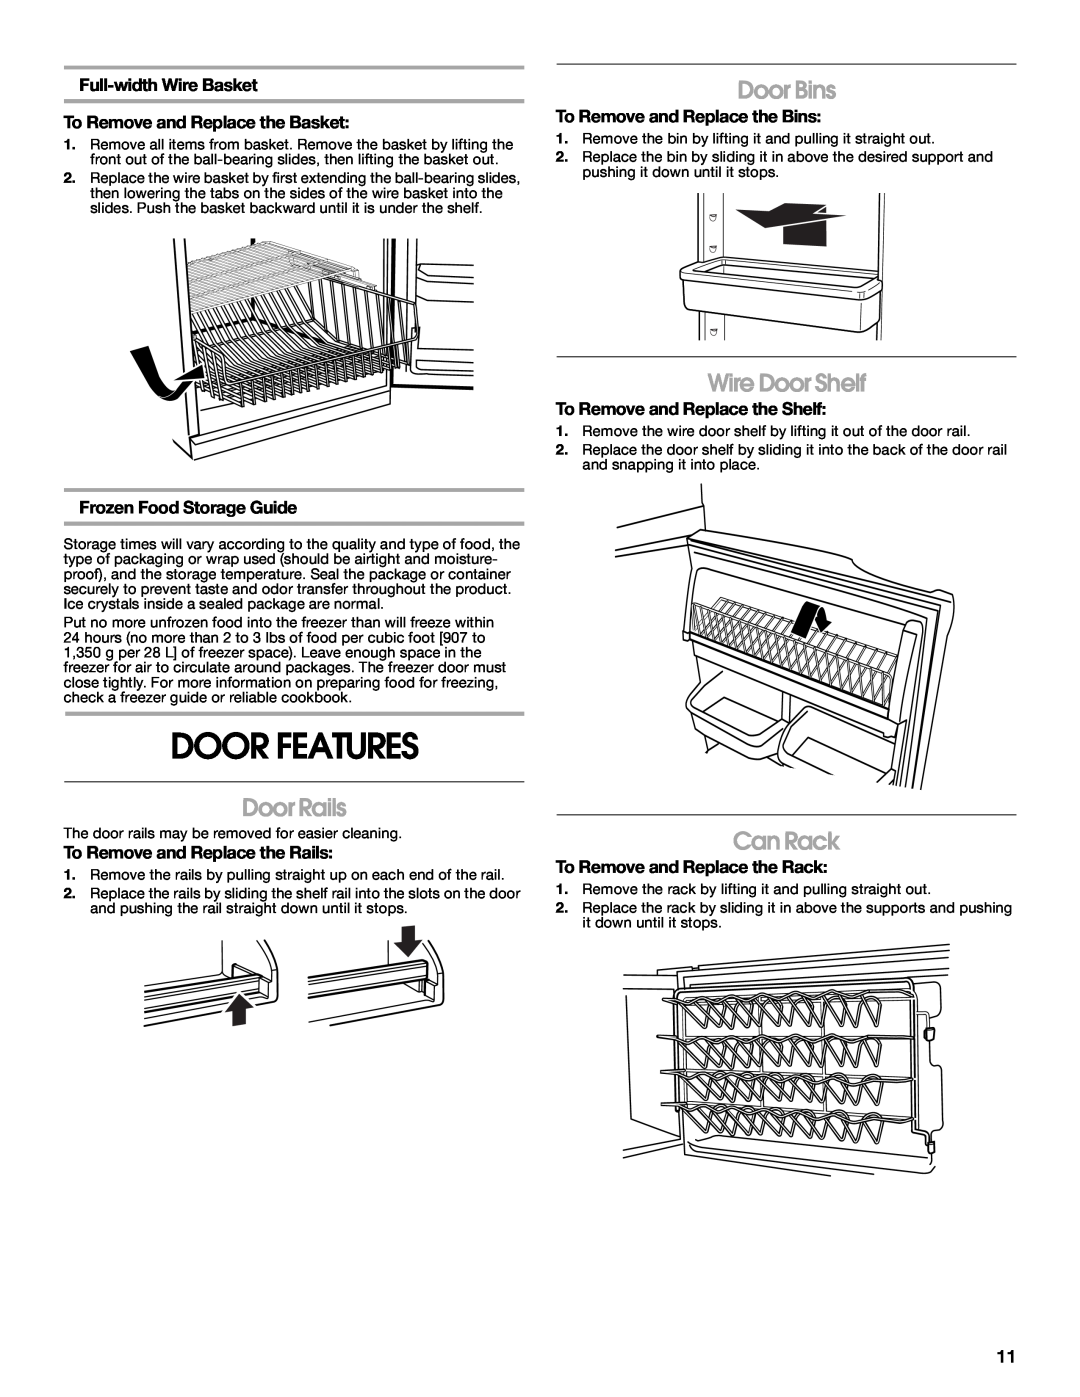 Whirlpool GAFZ21XXRK01 manual Door Features, Door Rails, Door Bins, Wire Door Shelf, Can Rack, Frozen Food Storage Guide 